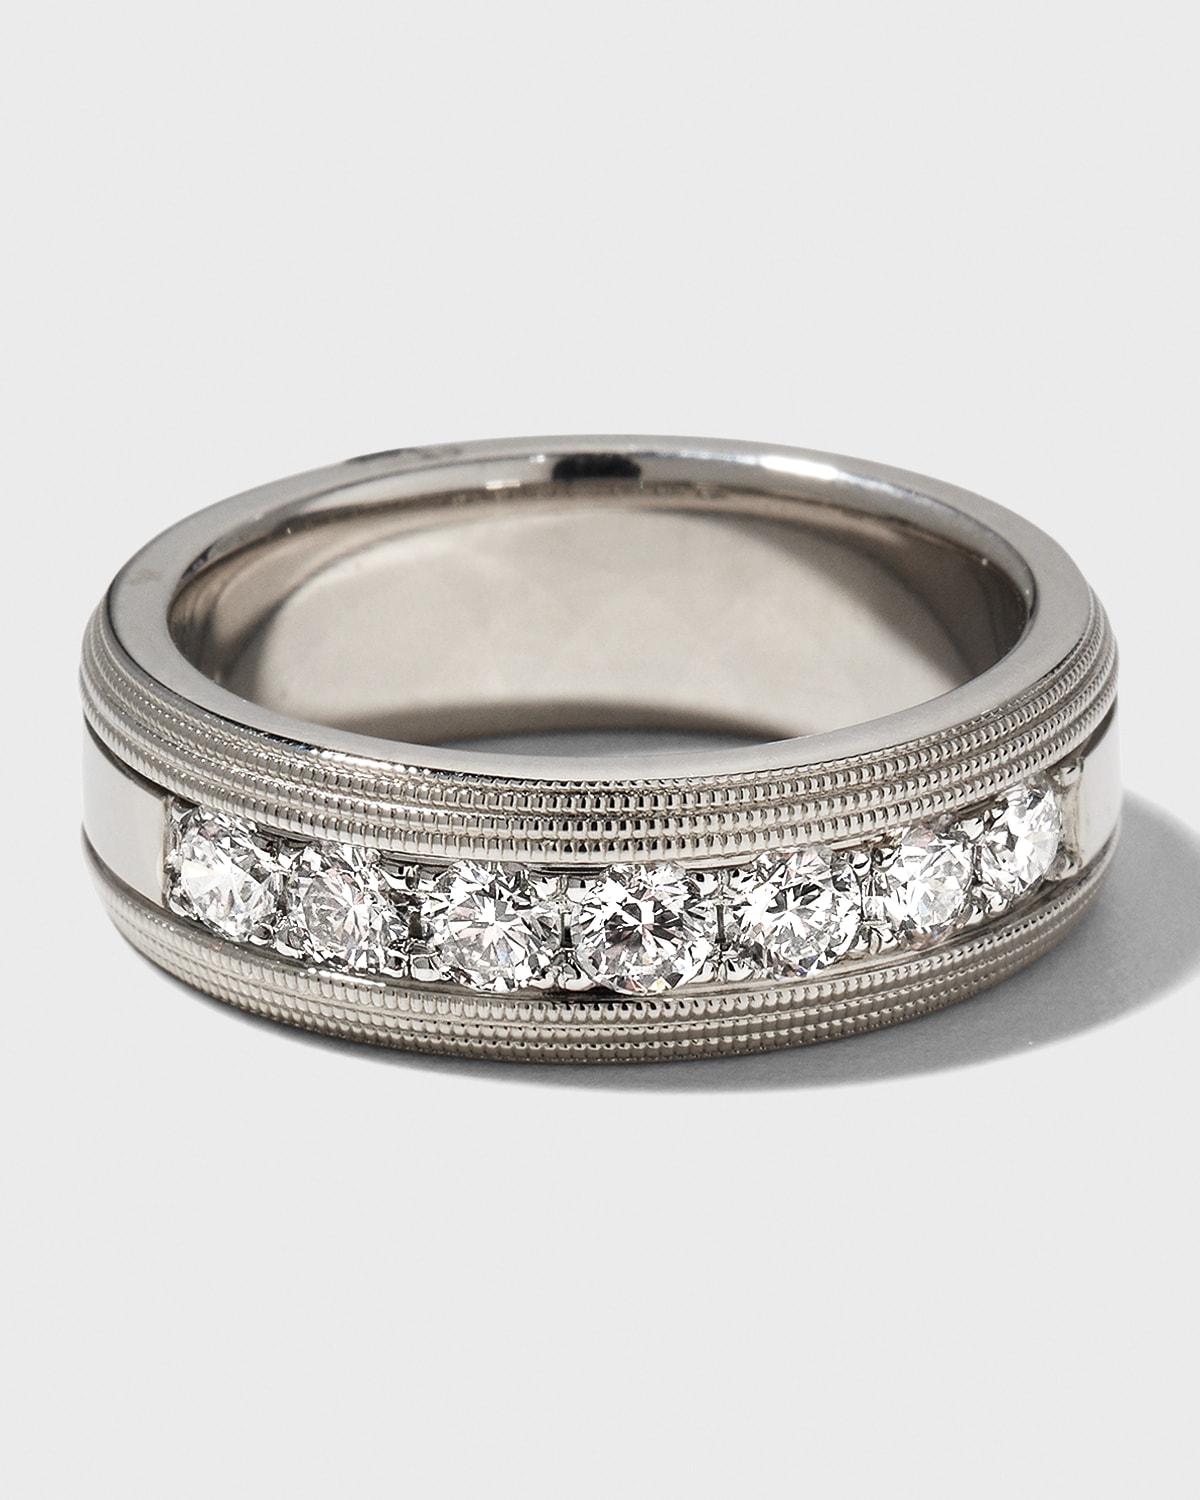 NM Diamond Collection Men's 18k White Gold Round 7-Diamond Ring, Size 10